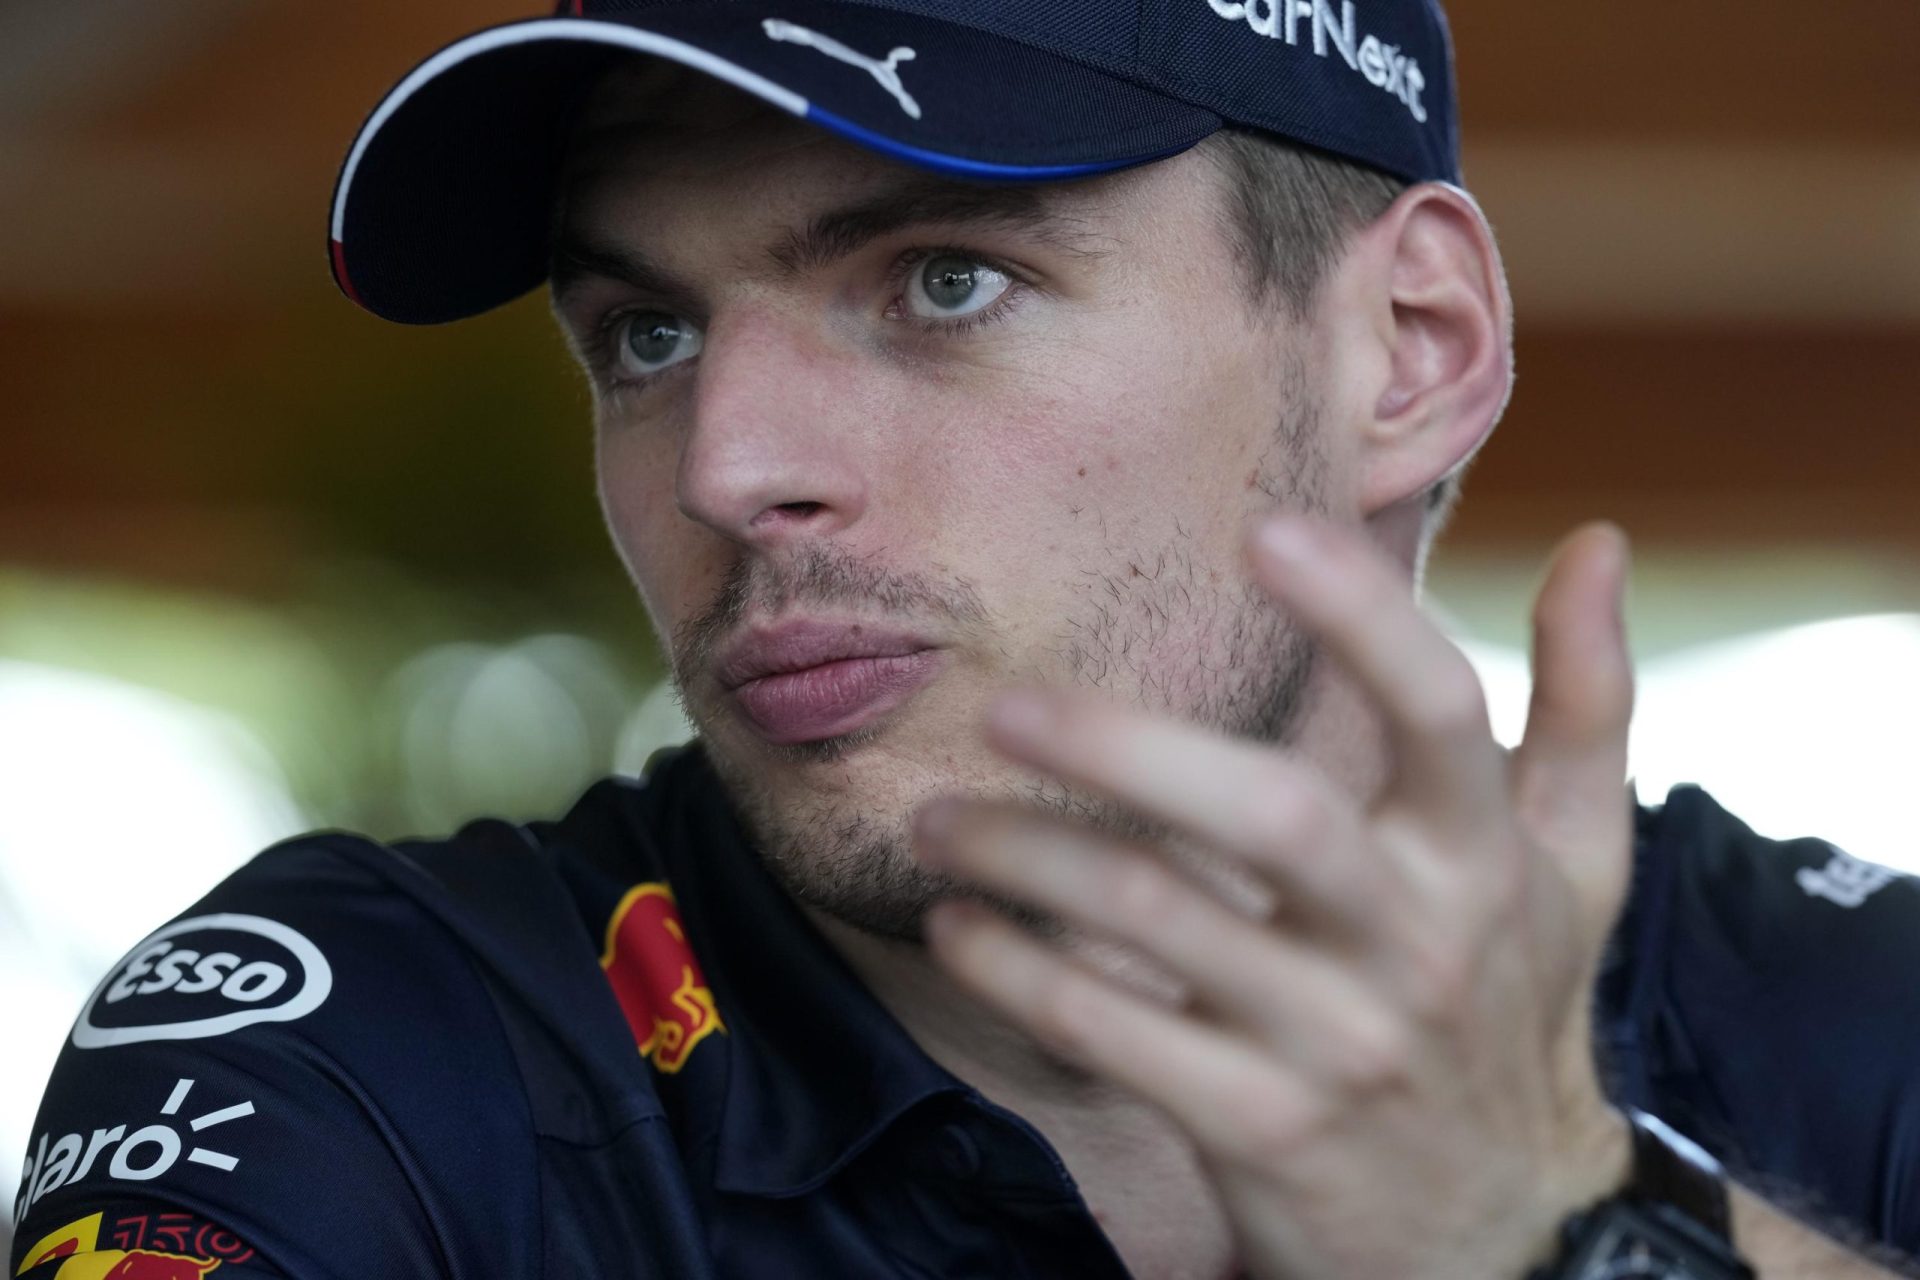 Exclusiva AP: Verstappen dice que los pilotos se limitan a domar a los aficionados